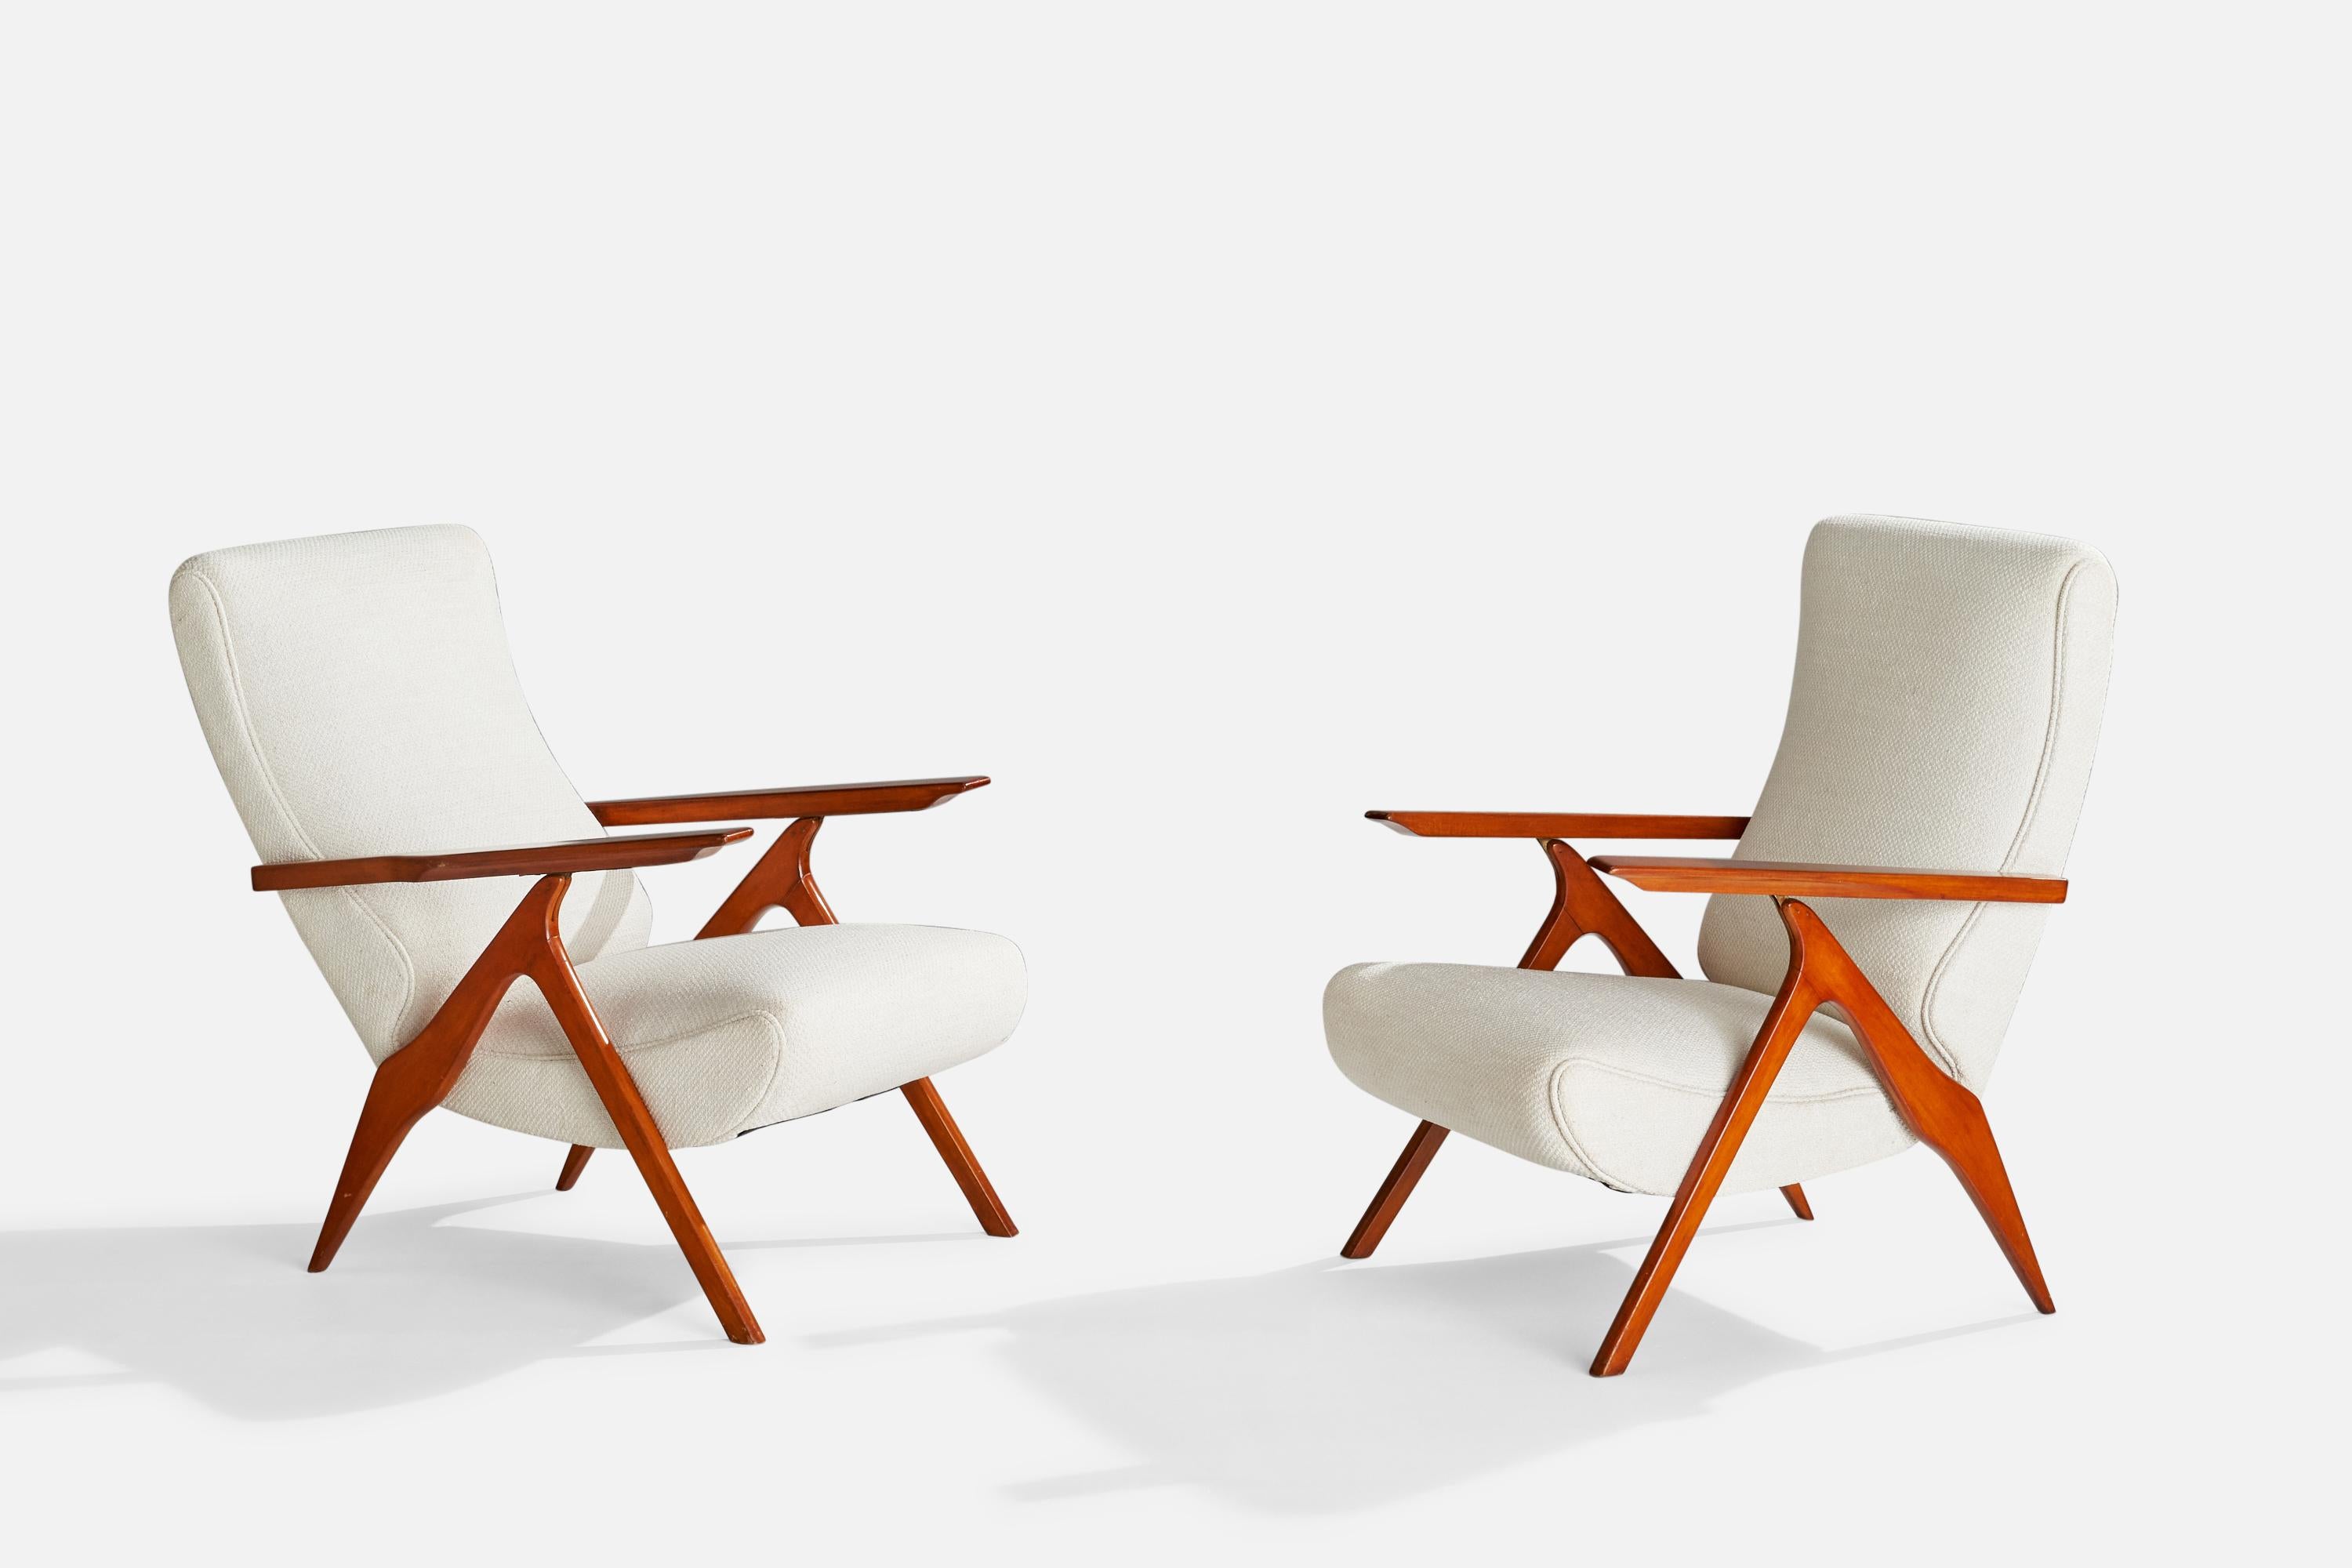 Ein Paar verstellbare Sessel aus Messing, Holz und weißem Stoff, entworfen und hergestellt von Antonio Gorgone, Italien, 1950er Jahre. 

Sitzhöhe 17